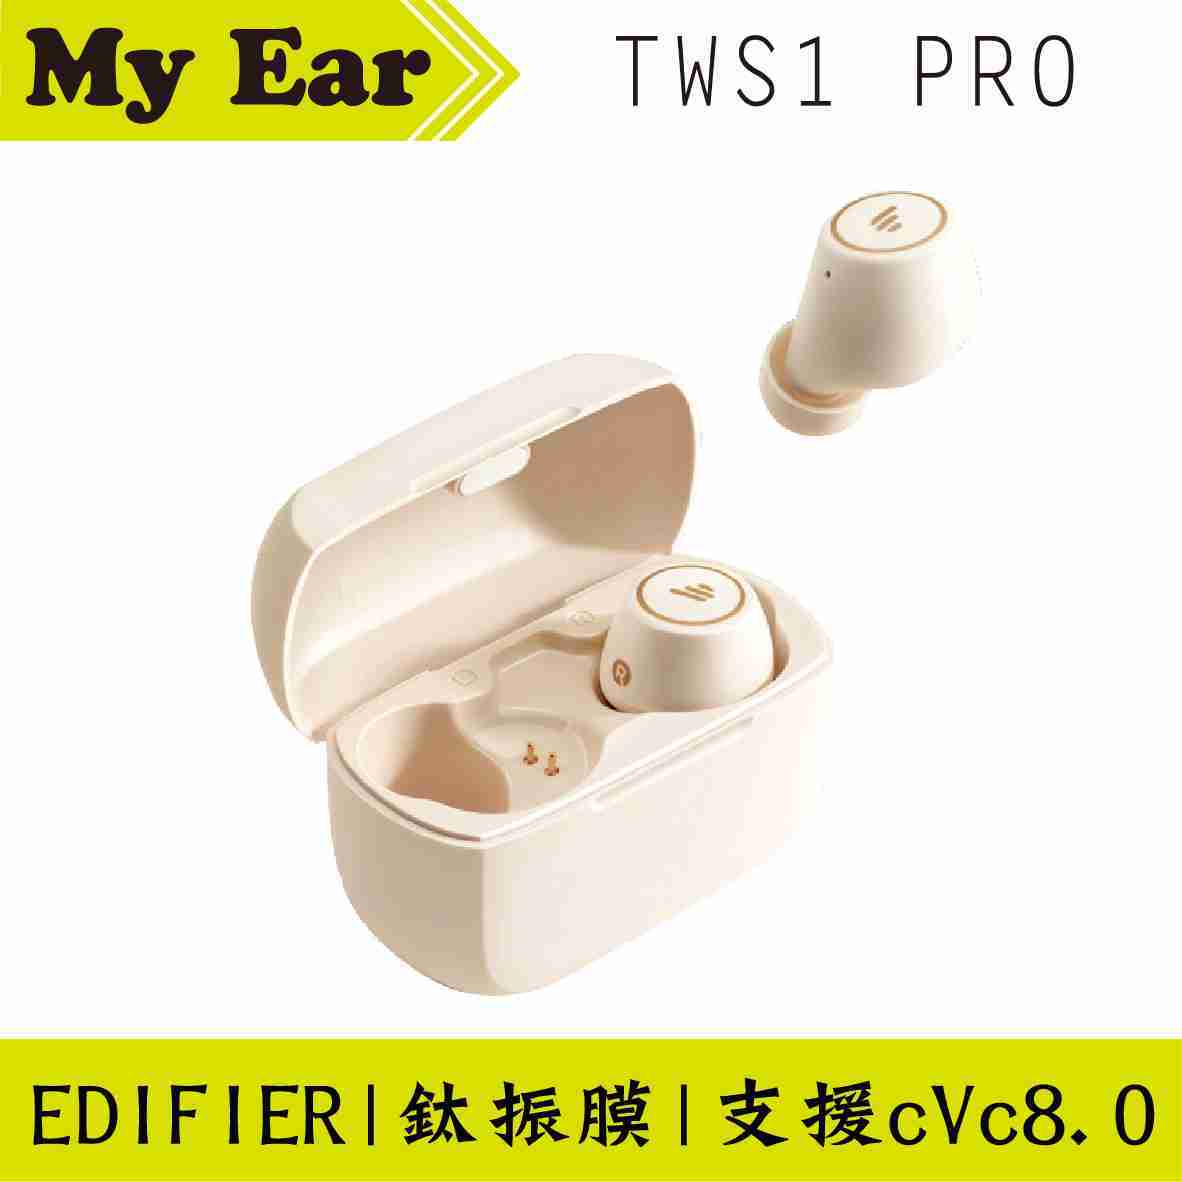 EDIFIER 漫步者 TWS1 pro 白 IP65 防水 通話降噪 藍芽 耳機 | My Ear 耳機專門店